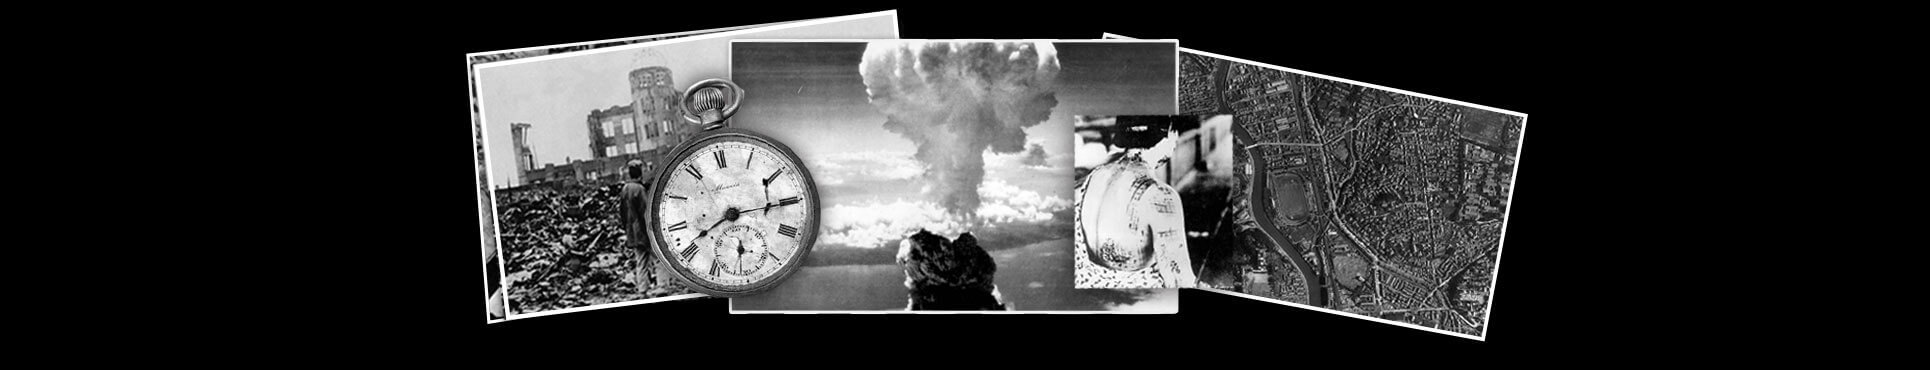 Montaje de fotos con reloj con la hora de la bomba, la explosión, mujer herida